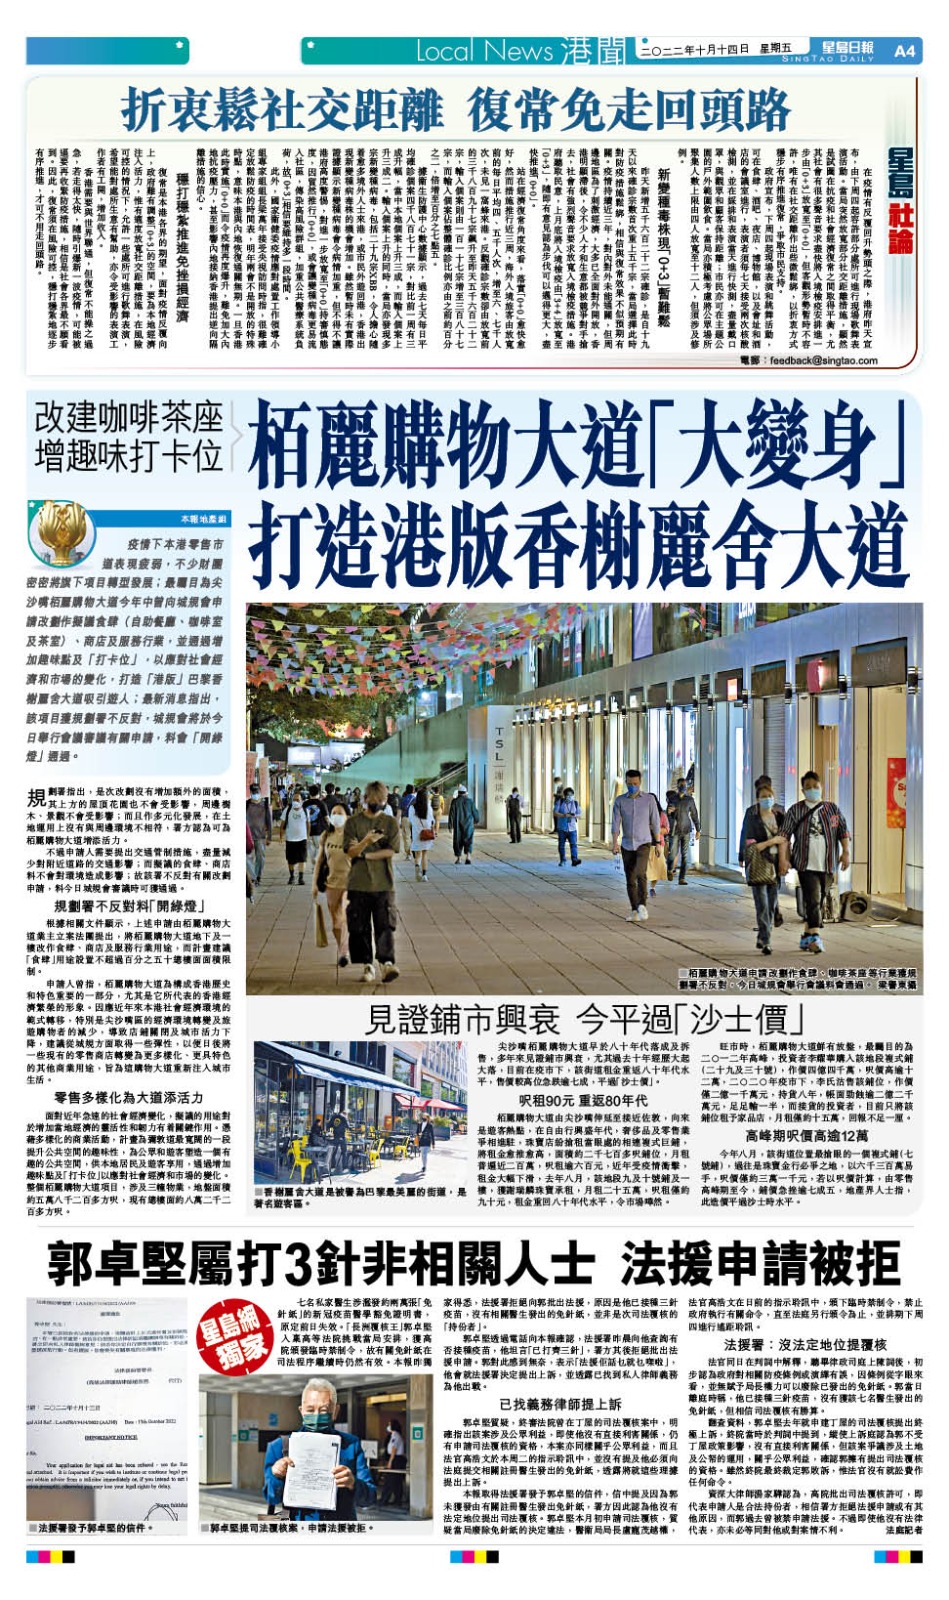 本报今日报导栢丽购物大道将“大变身”打造港版香榭丽舍大道。